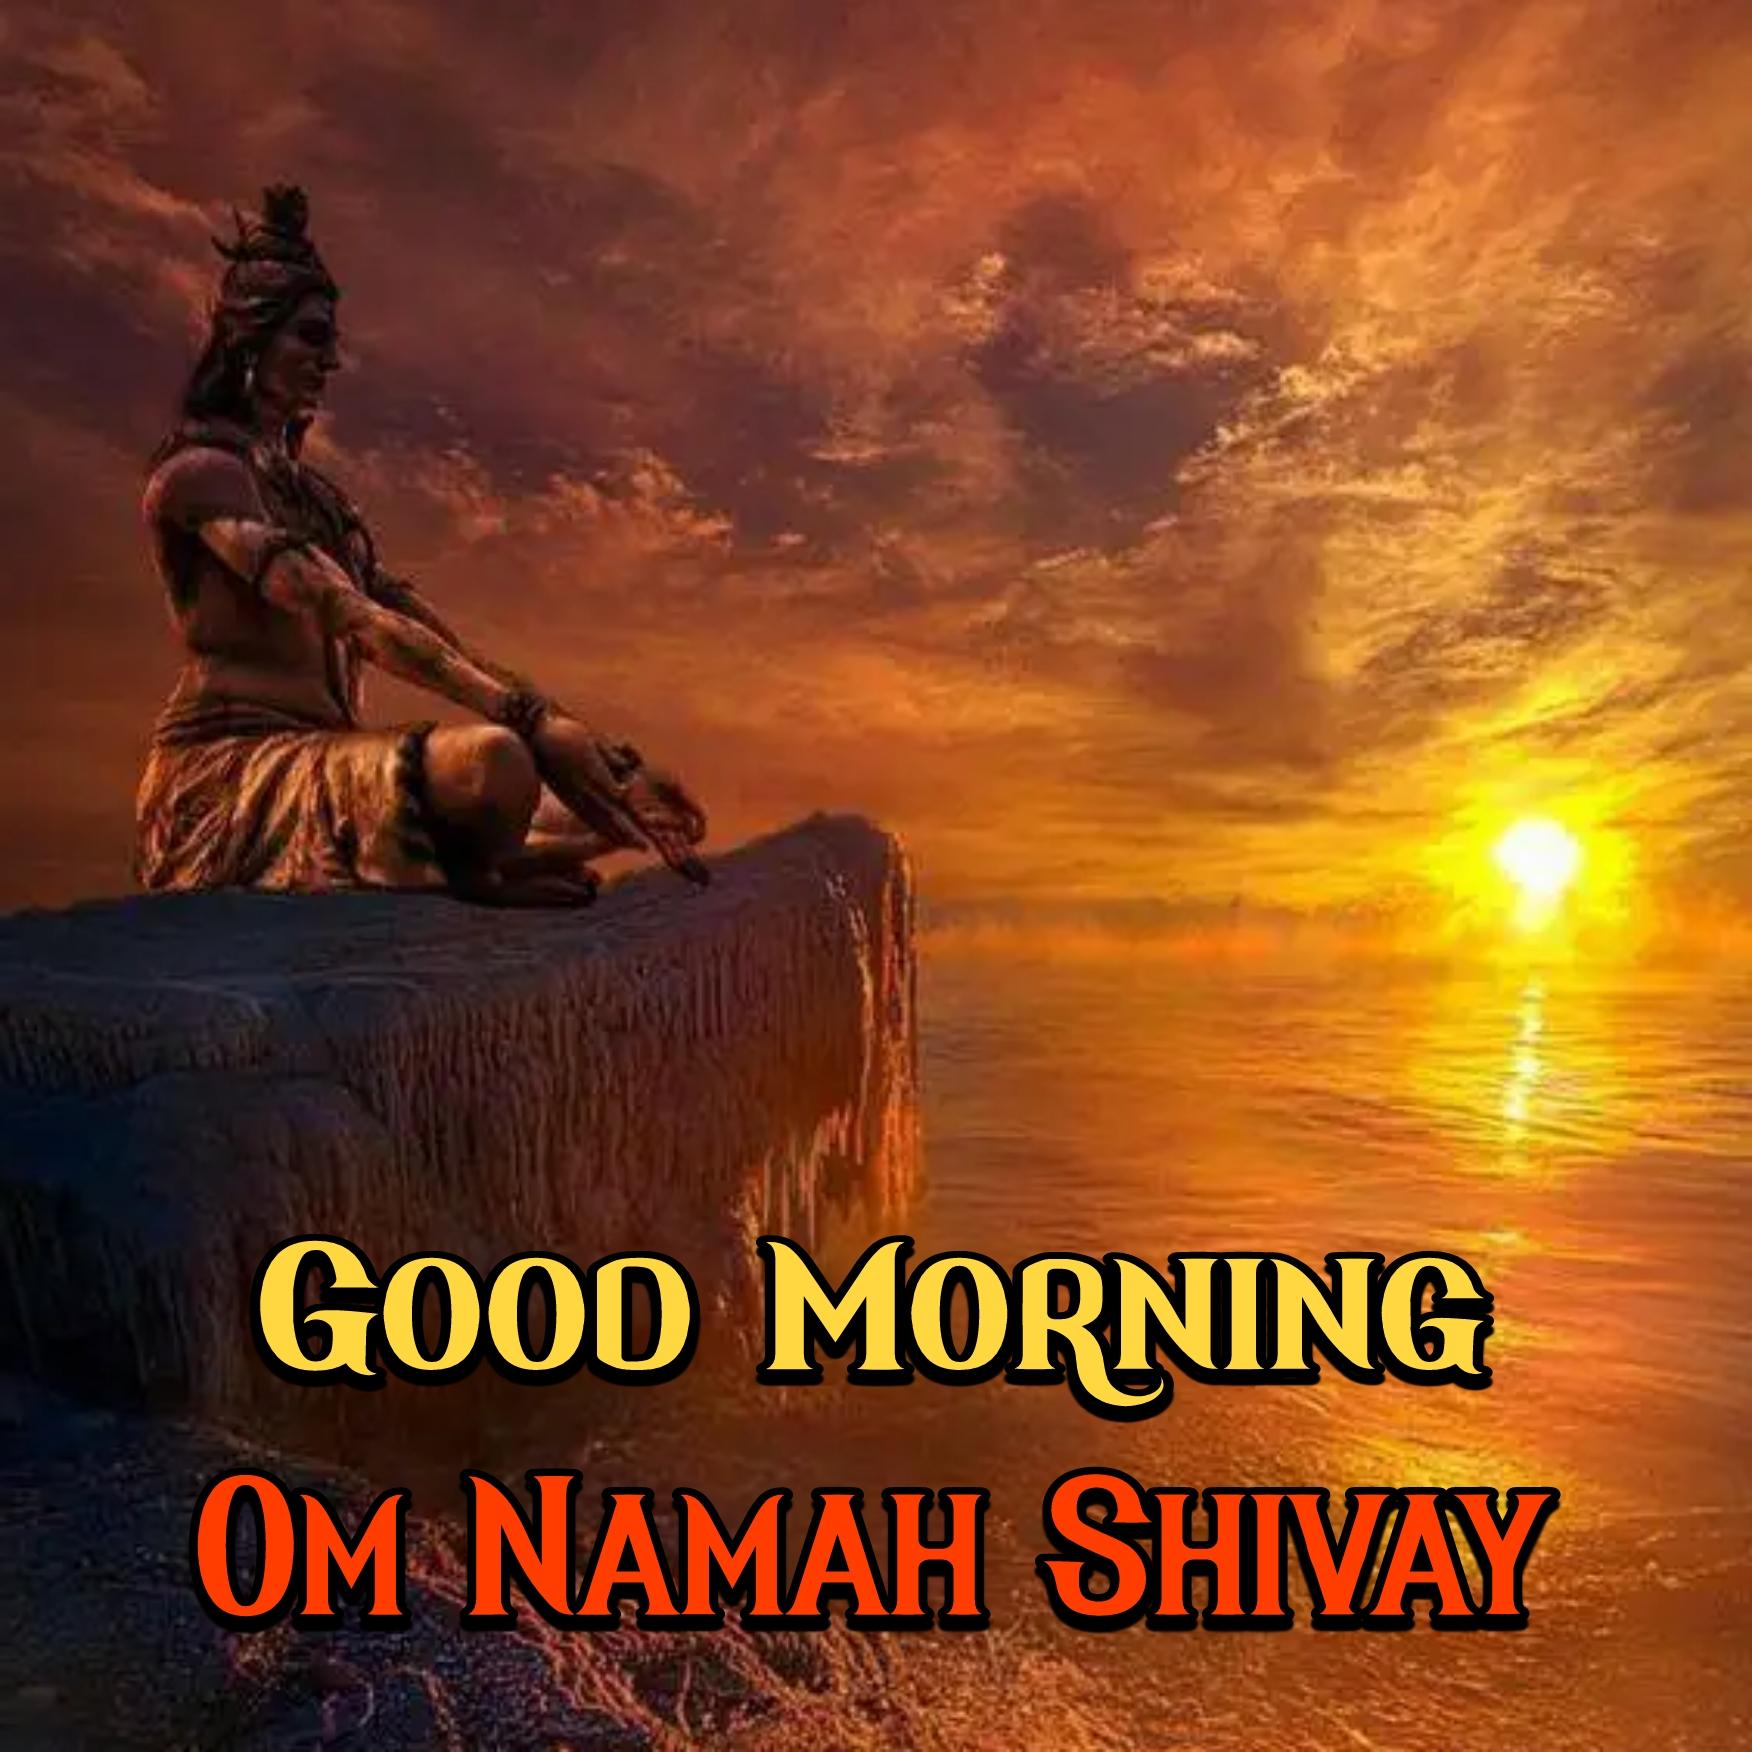 Good Morning Om Namah Shivay Images